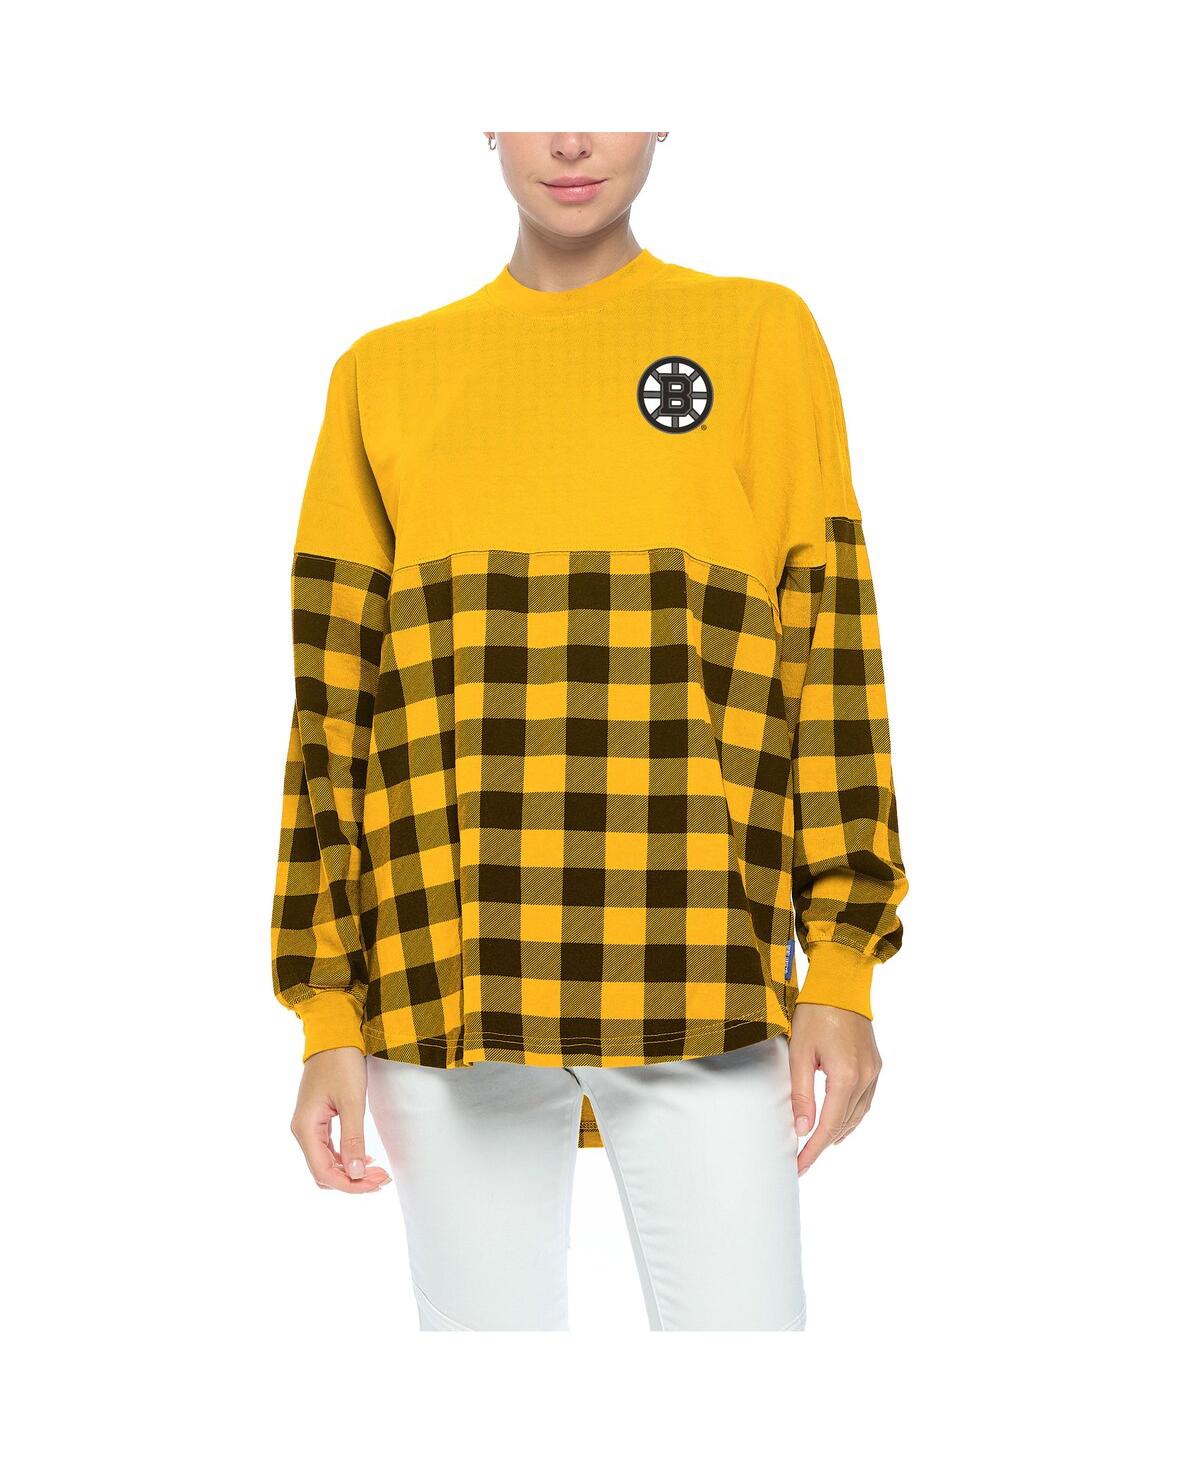 Shop Fanatics Women's  Gold Boston Bruins Buffalo Check Long Sleeve T-shirt